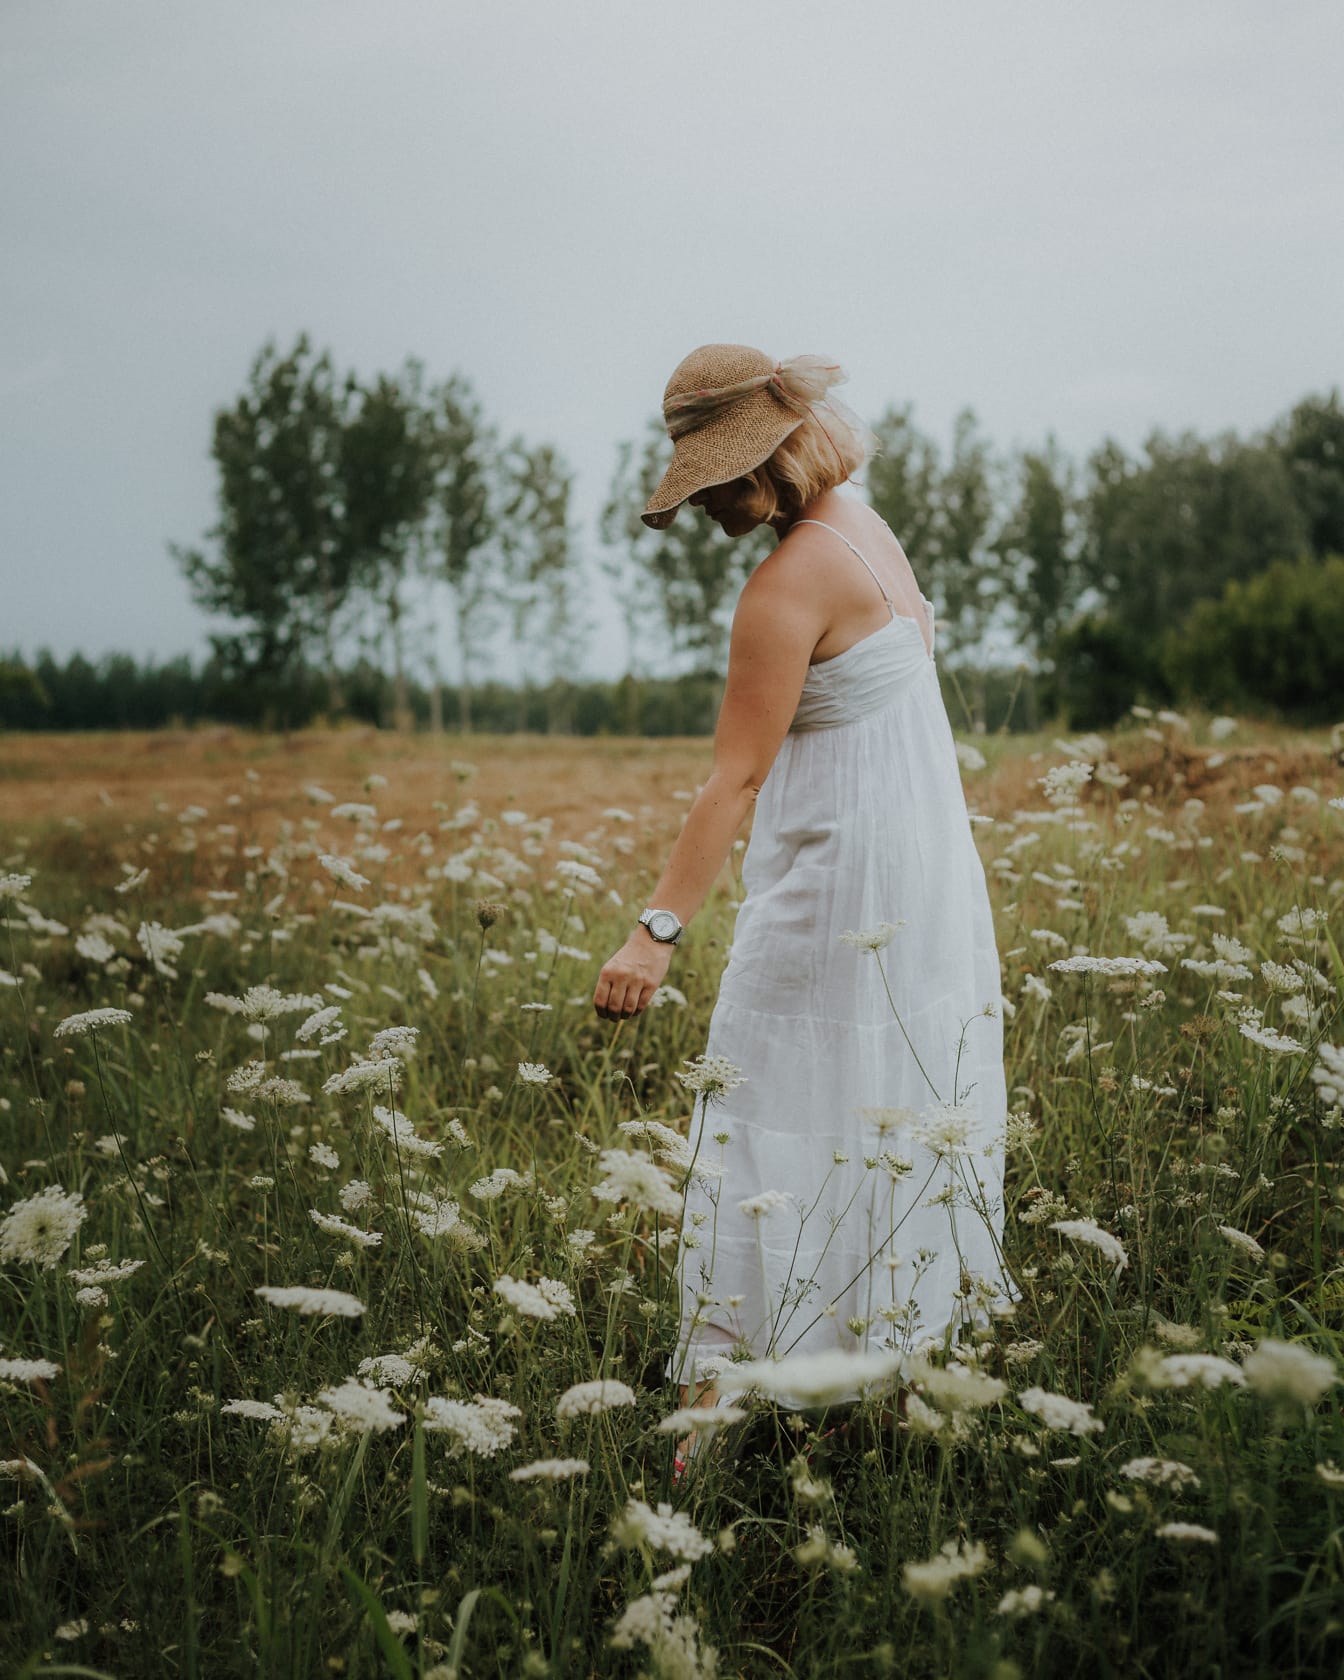 昔ながらの麦わら帽子と白いドレス、牧草地の写真モデルに